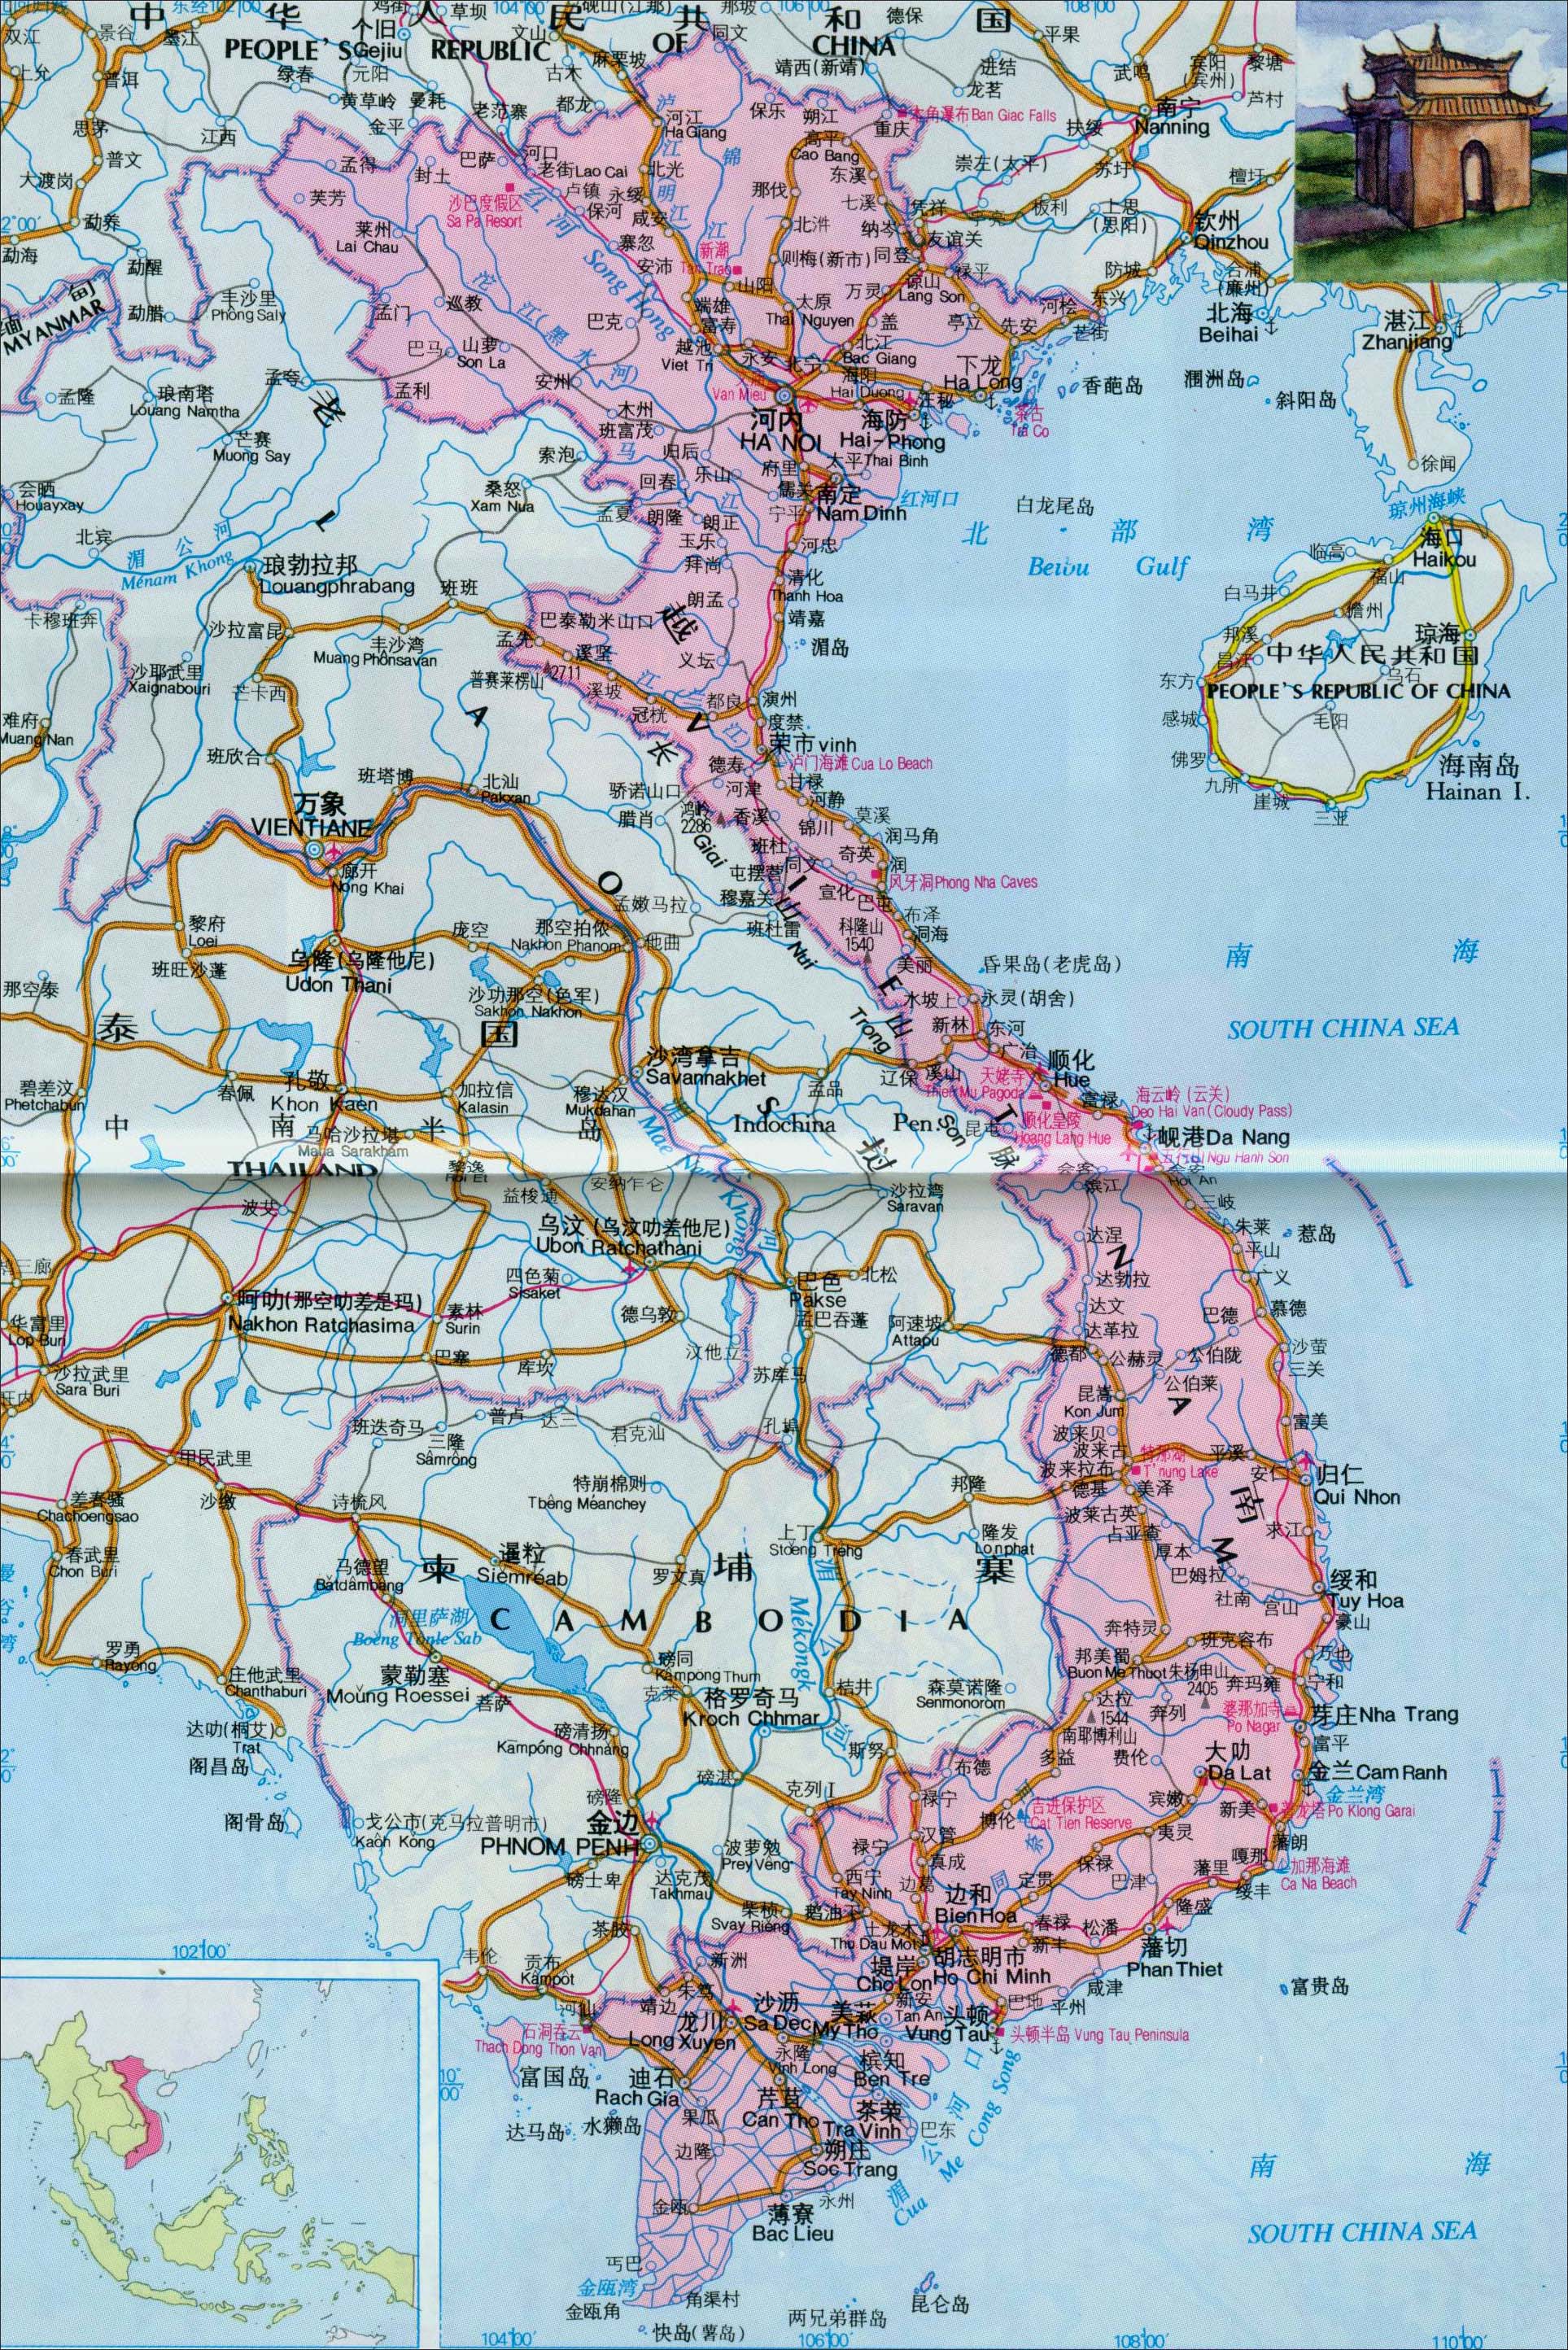 越南地图_越南地图中文版_越南地图全图_地图窝